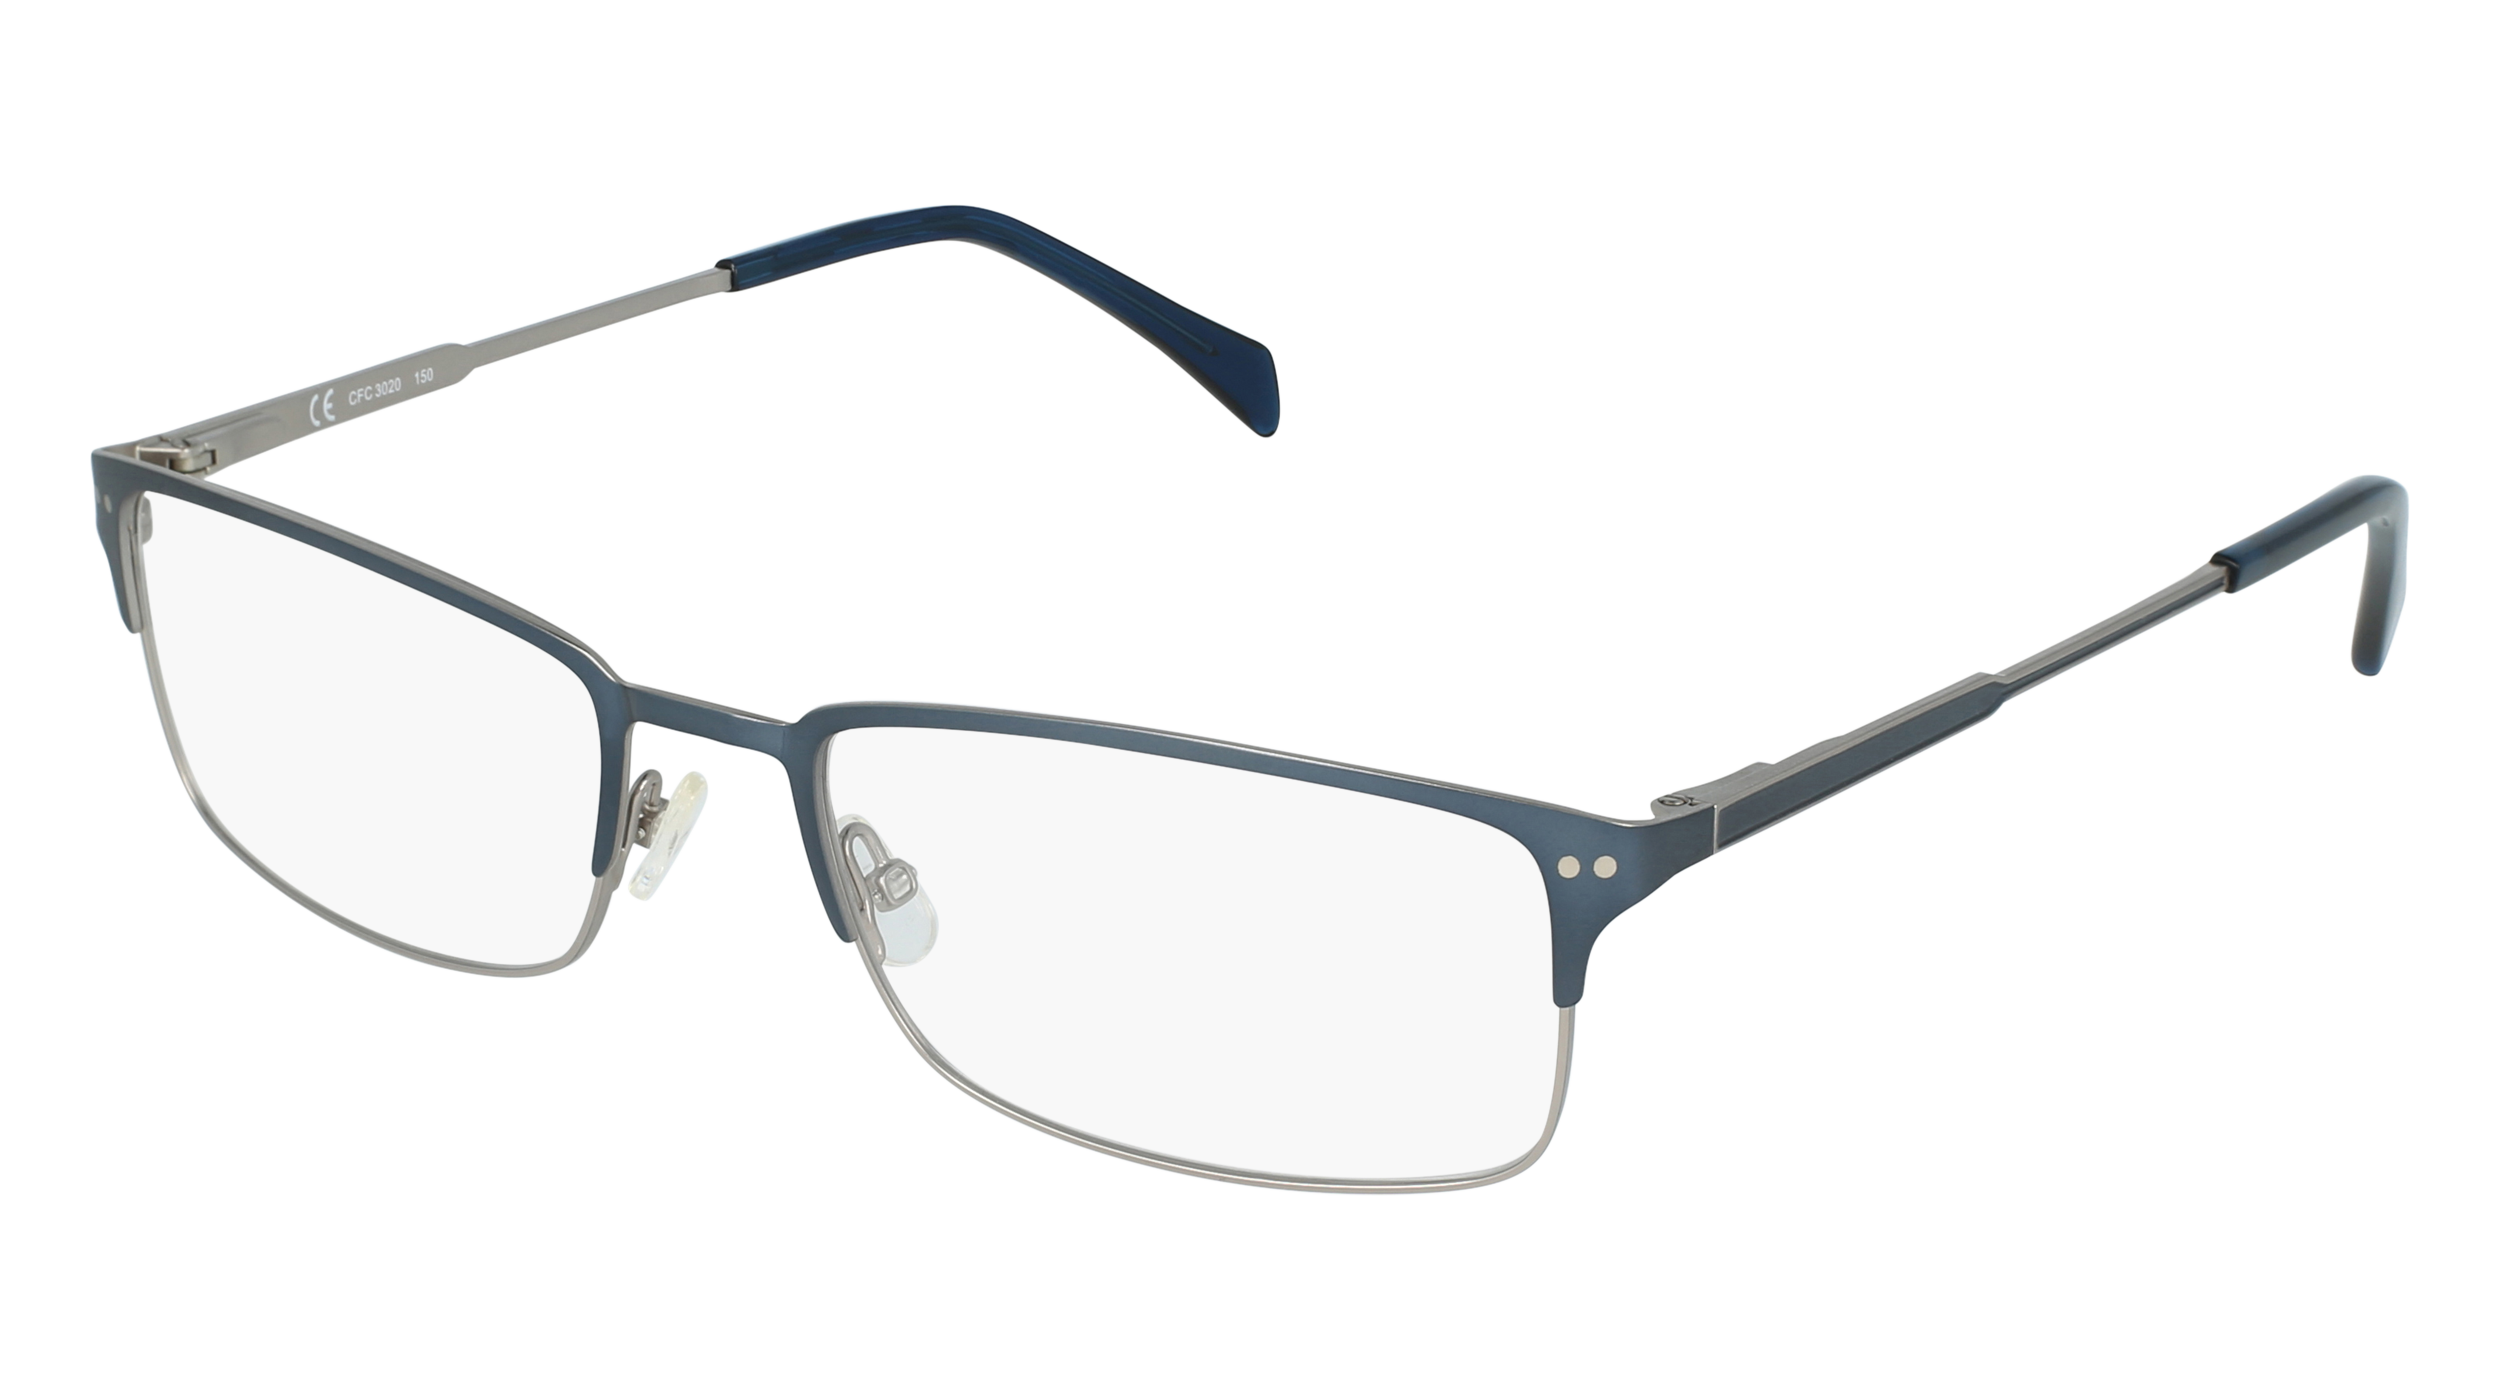 C CFC 3020 men's eyeglasses (from the side)